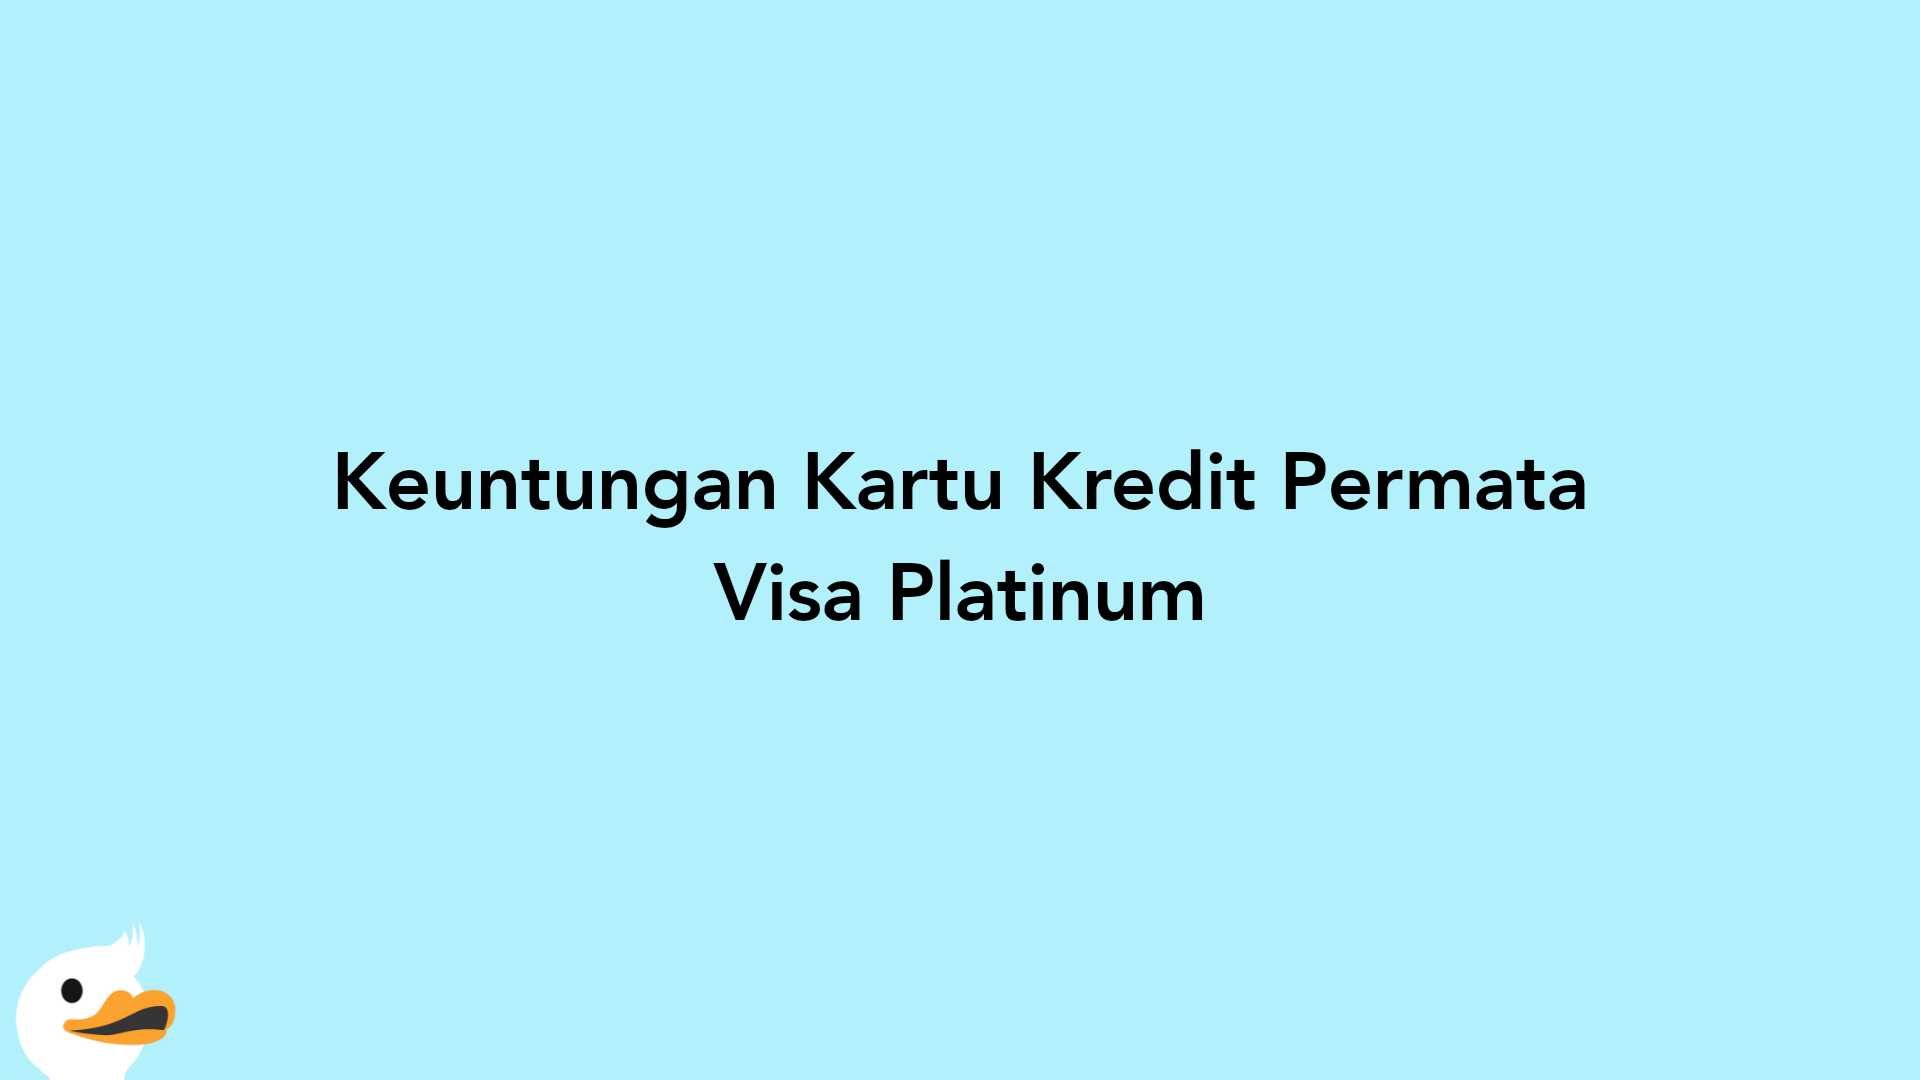 Keuntungan Kartu Kredit Permata Visa Platinum